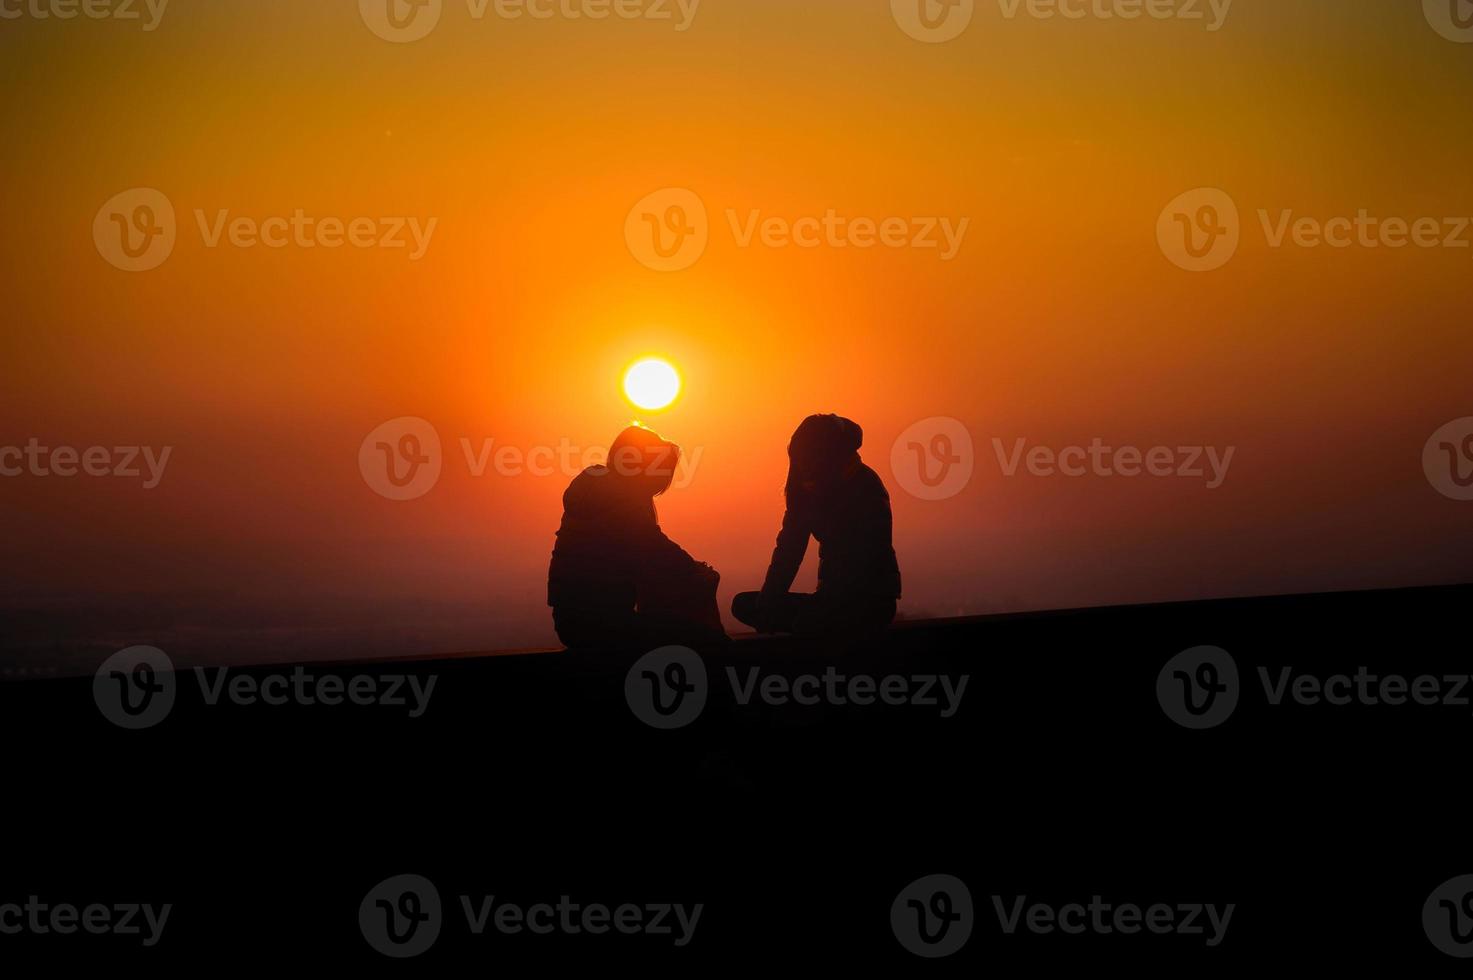 vertrouwelijkheid tussen twee tieners bij zonsondergang. foto